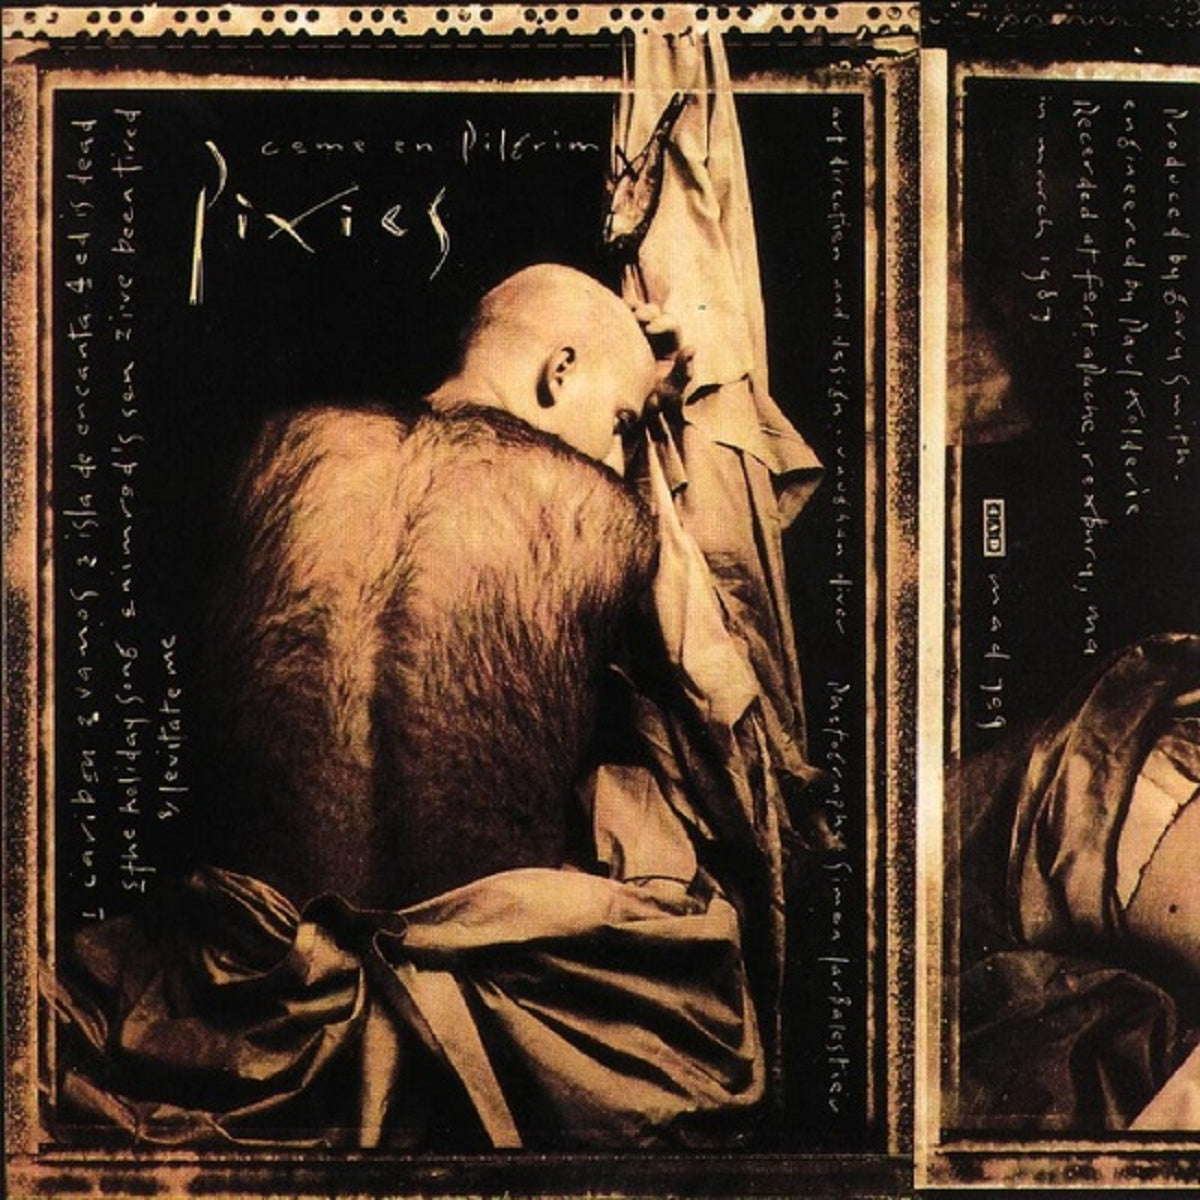 Pixies - Come On Pilgrim - BROKEN 8 RECORDS